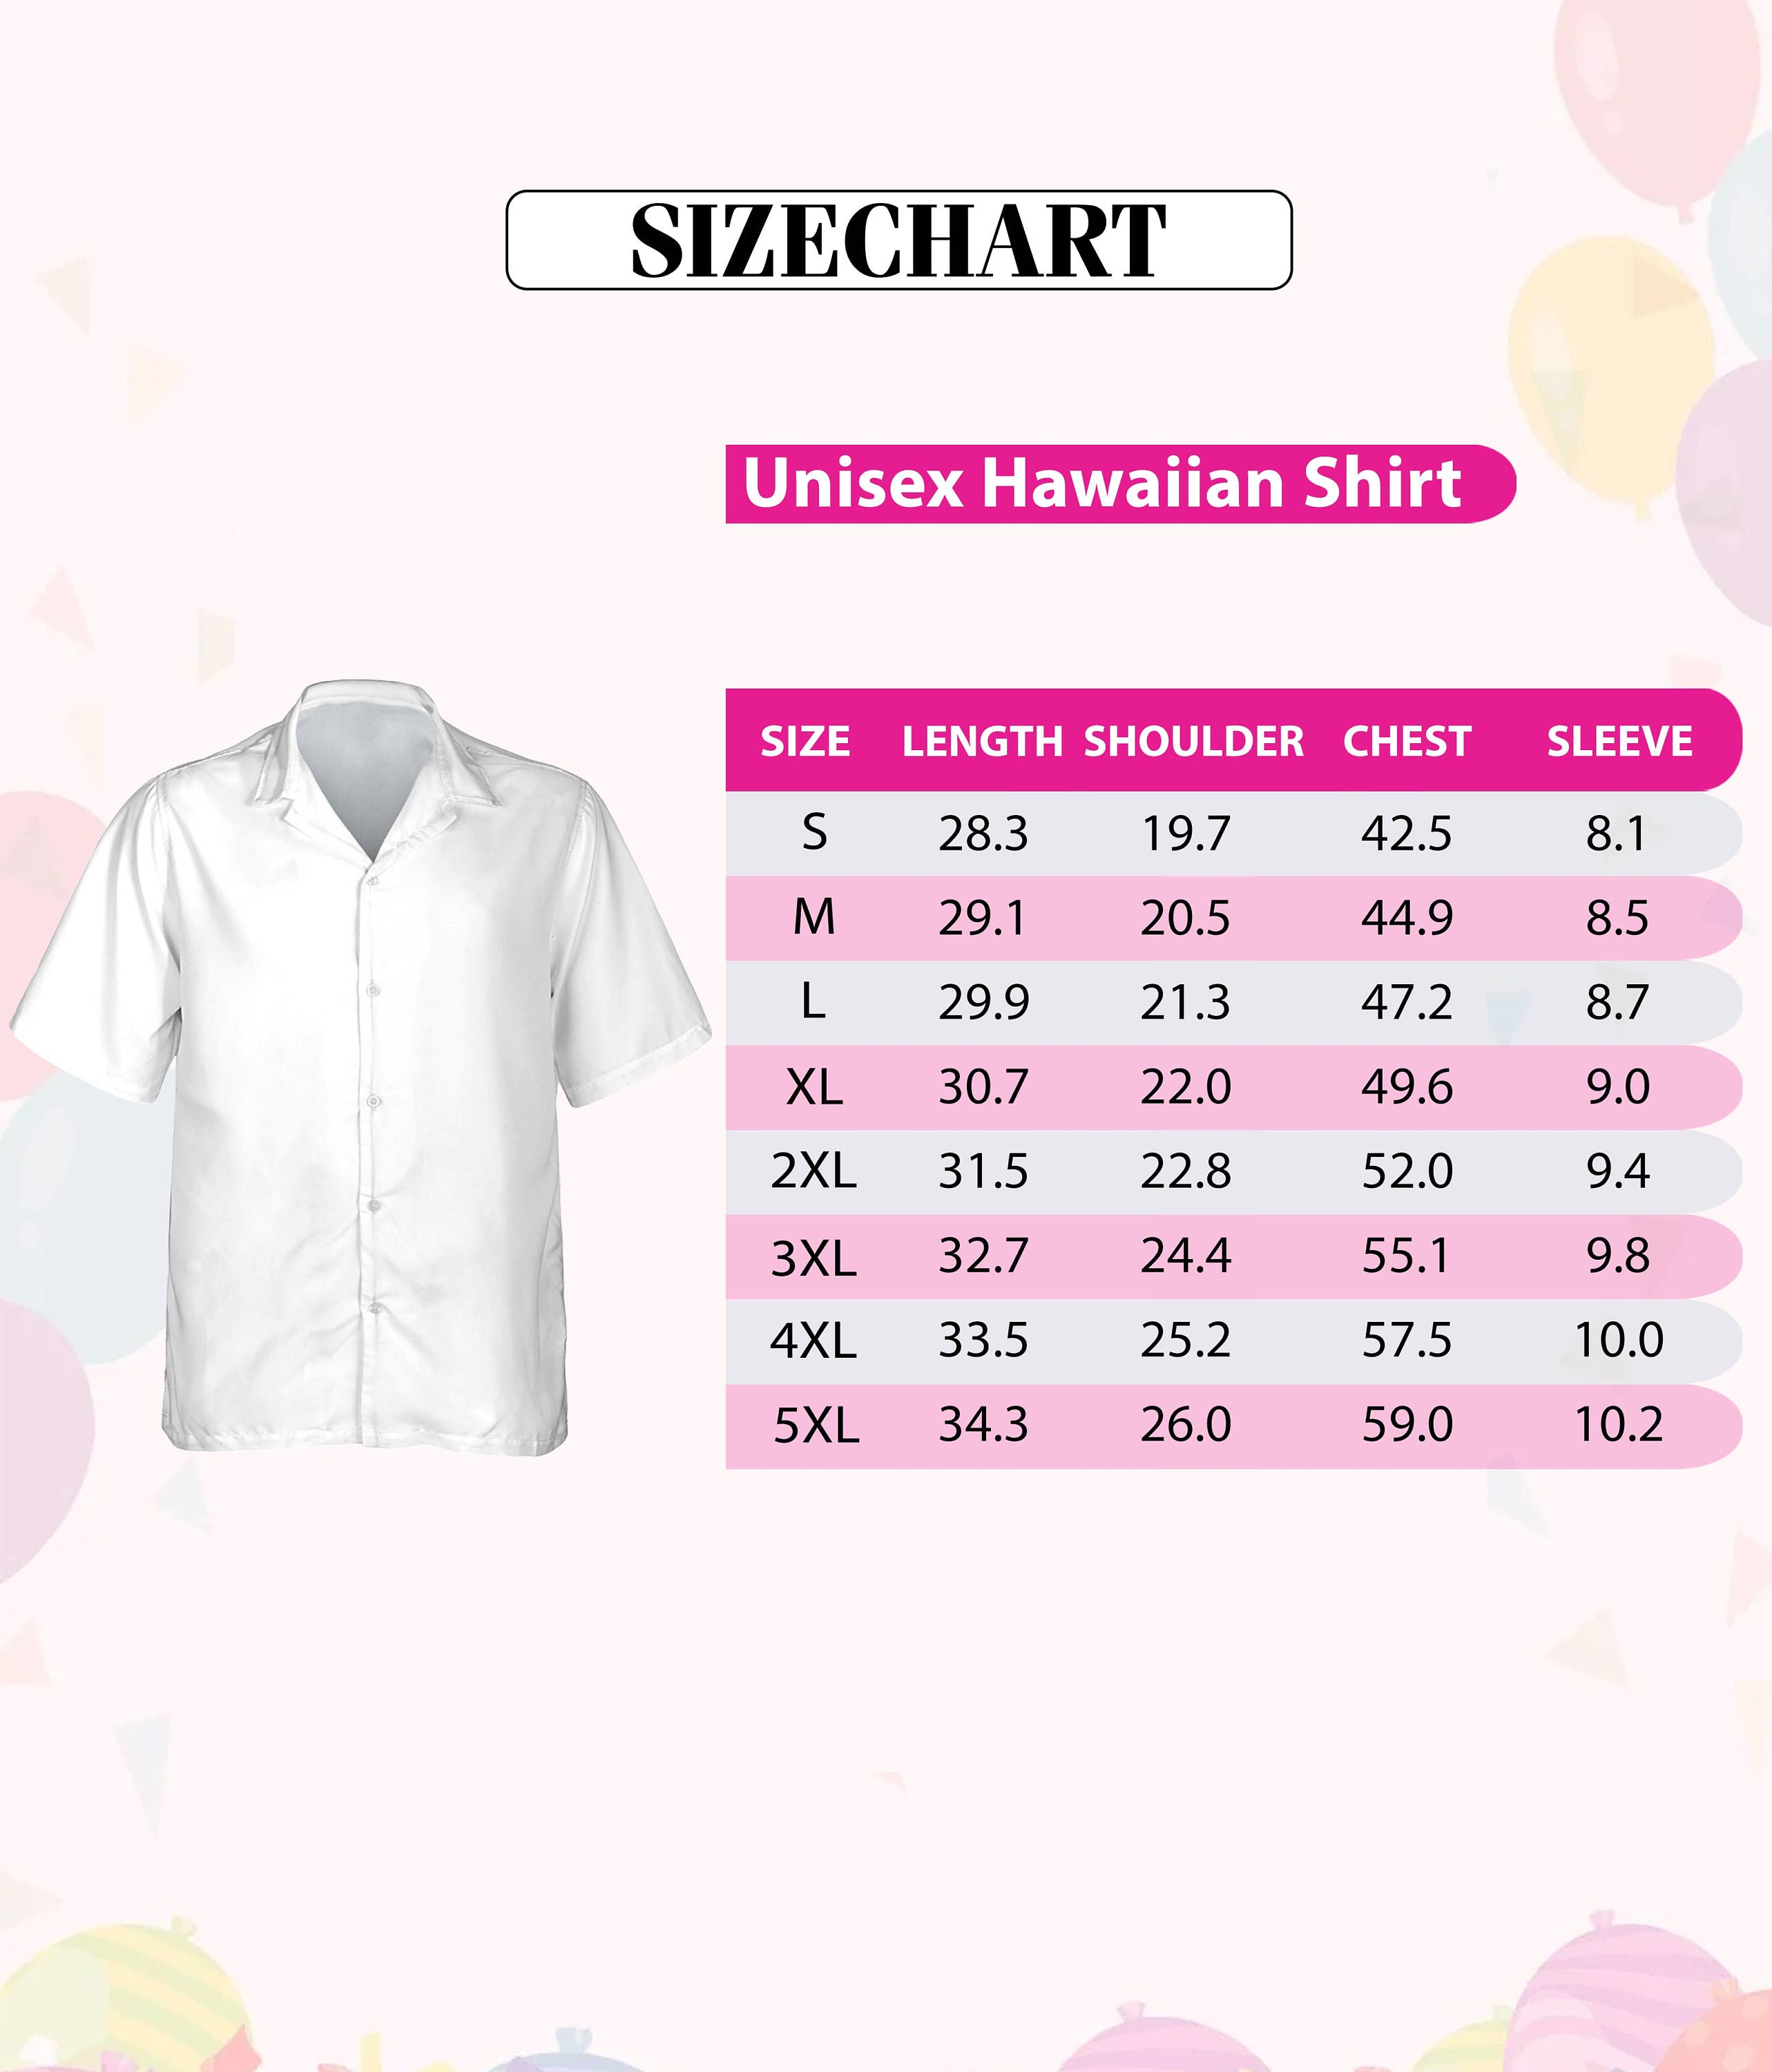 Dragon Hawaii Beach Shirt, Dragon Hawaiian Shirt